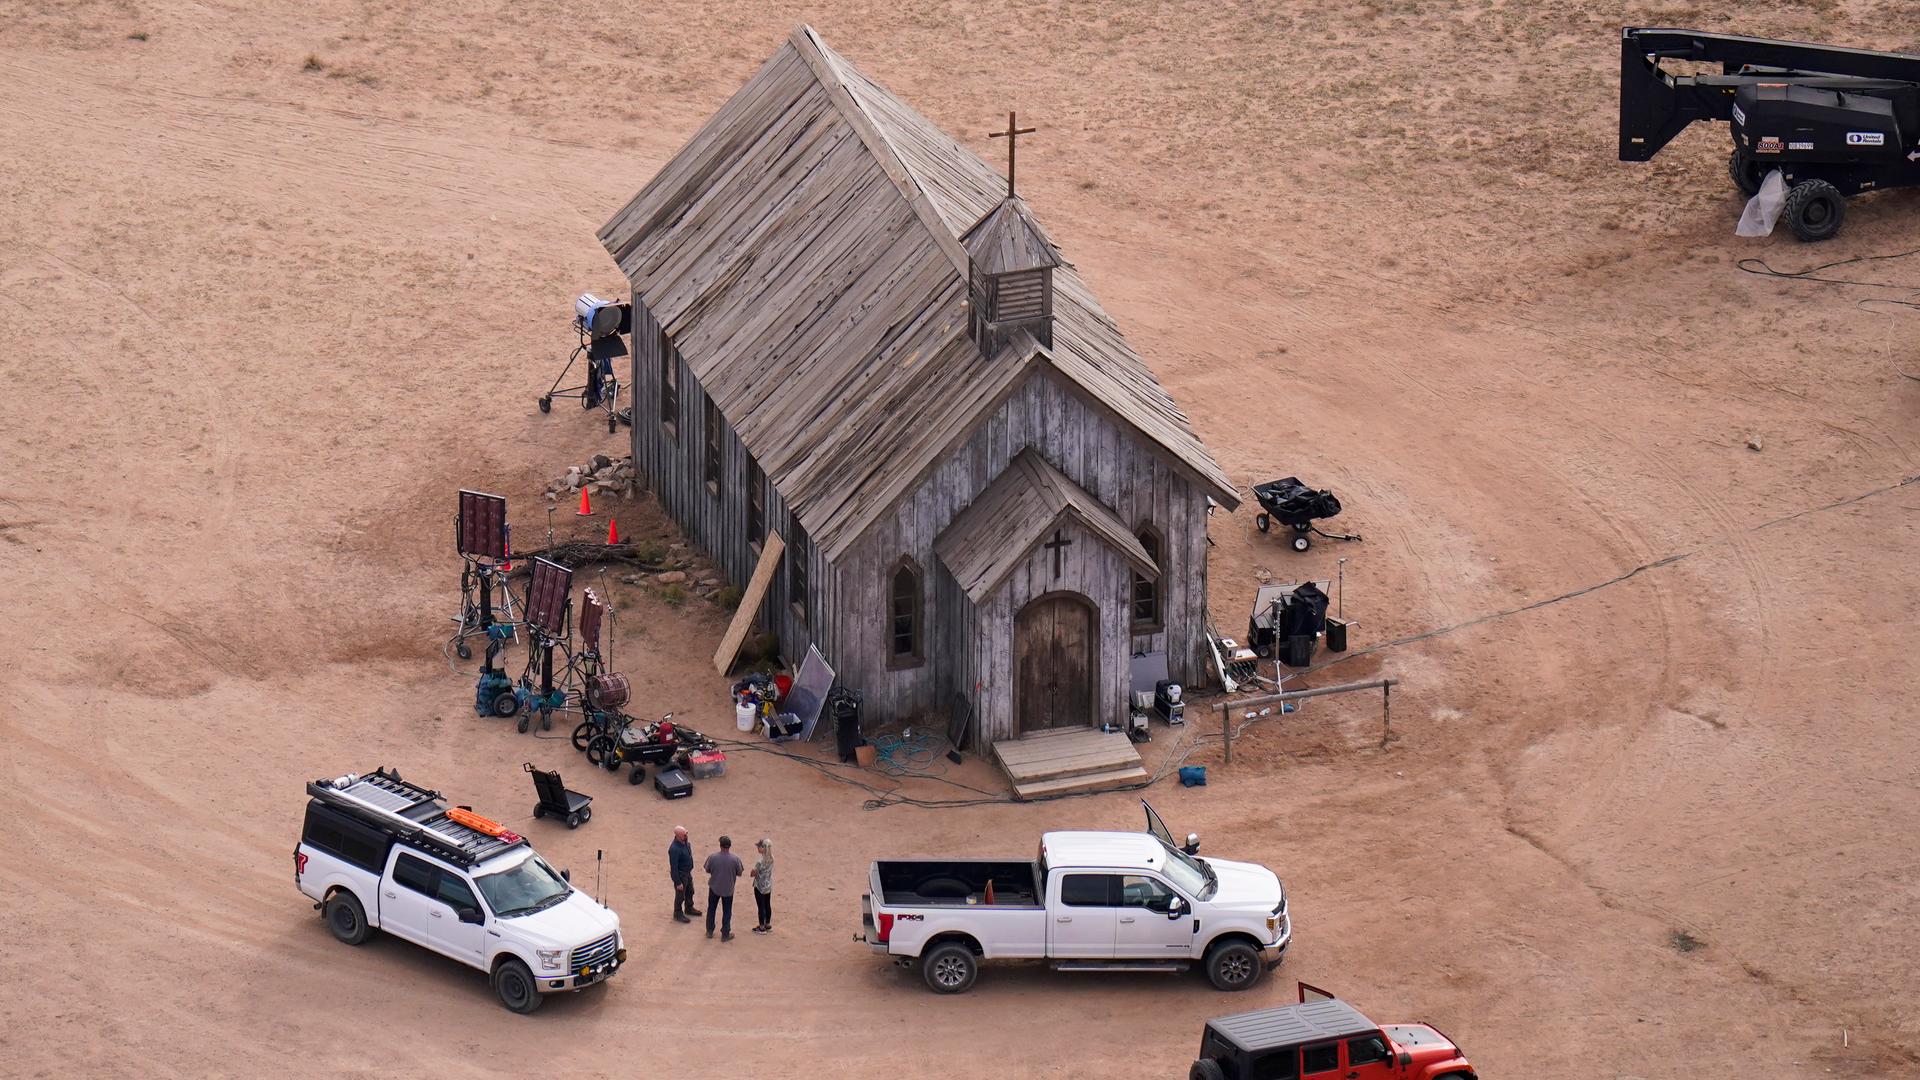 Luftaufnahme der Bonanza Creek Ranch, man sieht eine simple Kirche aus Holz mit einem Kreuz obendrauf, drumherum sind Filmequipment und mehrere Autos zu sehen.